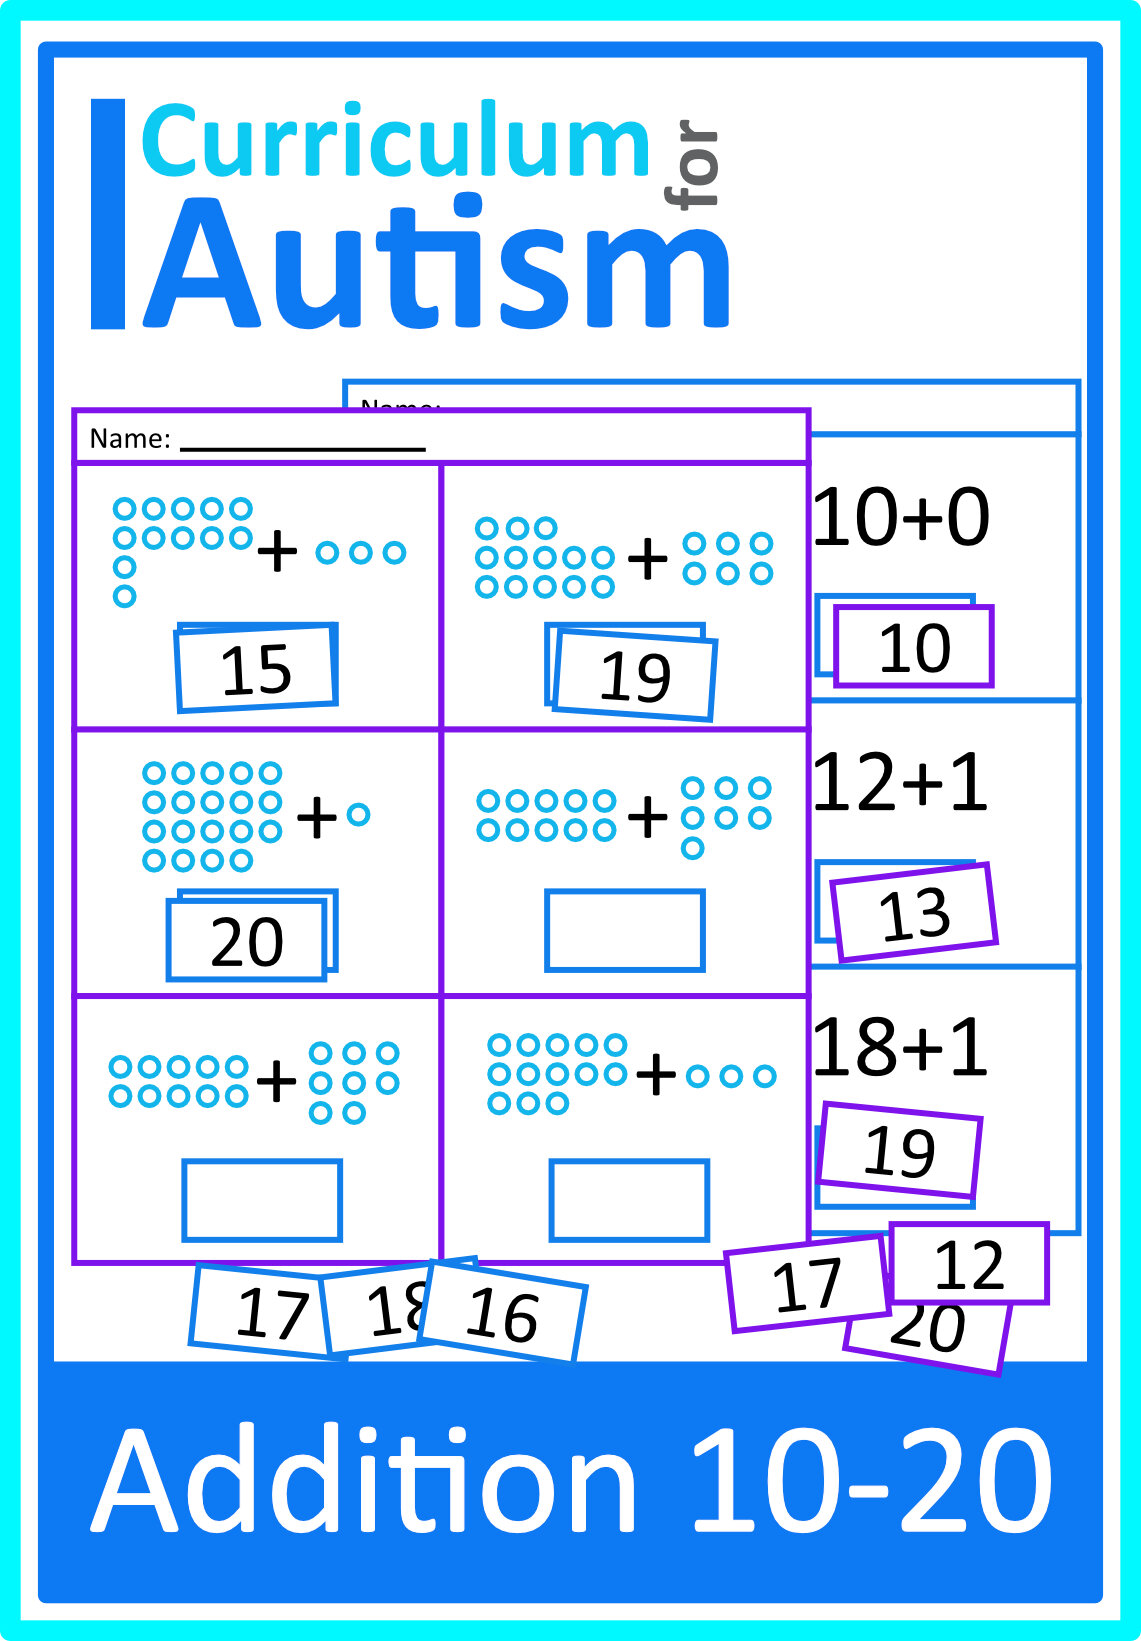 math-lesson-resources-curriculum-for-autism